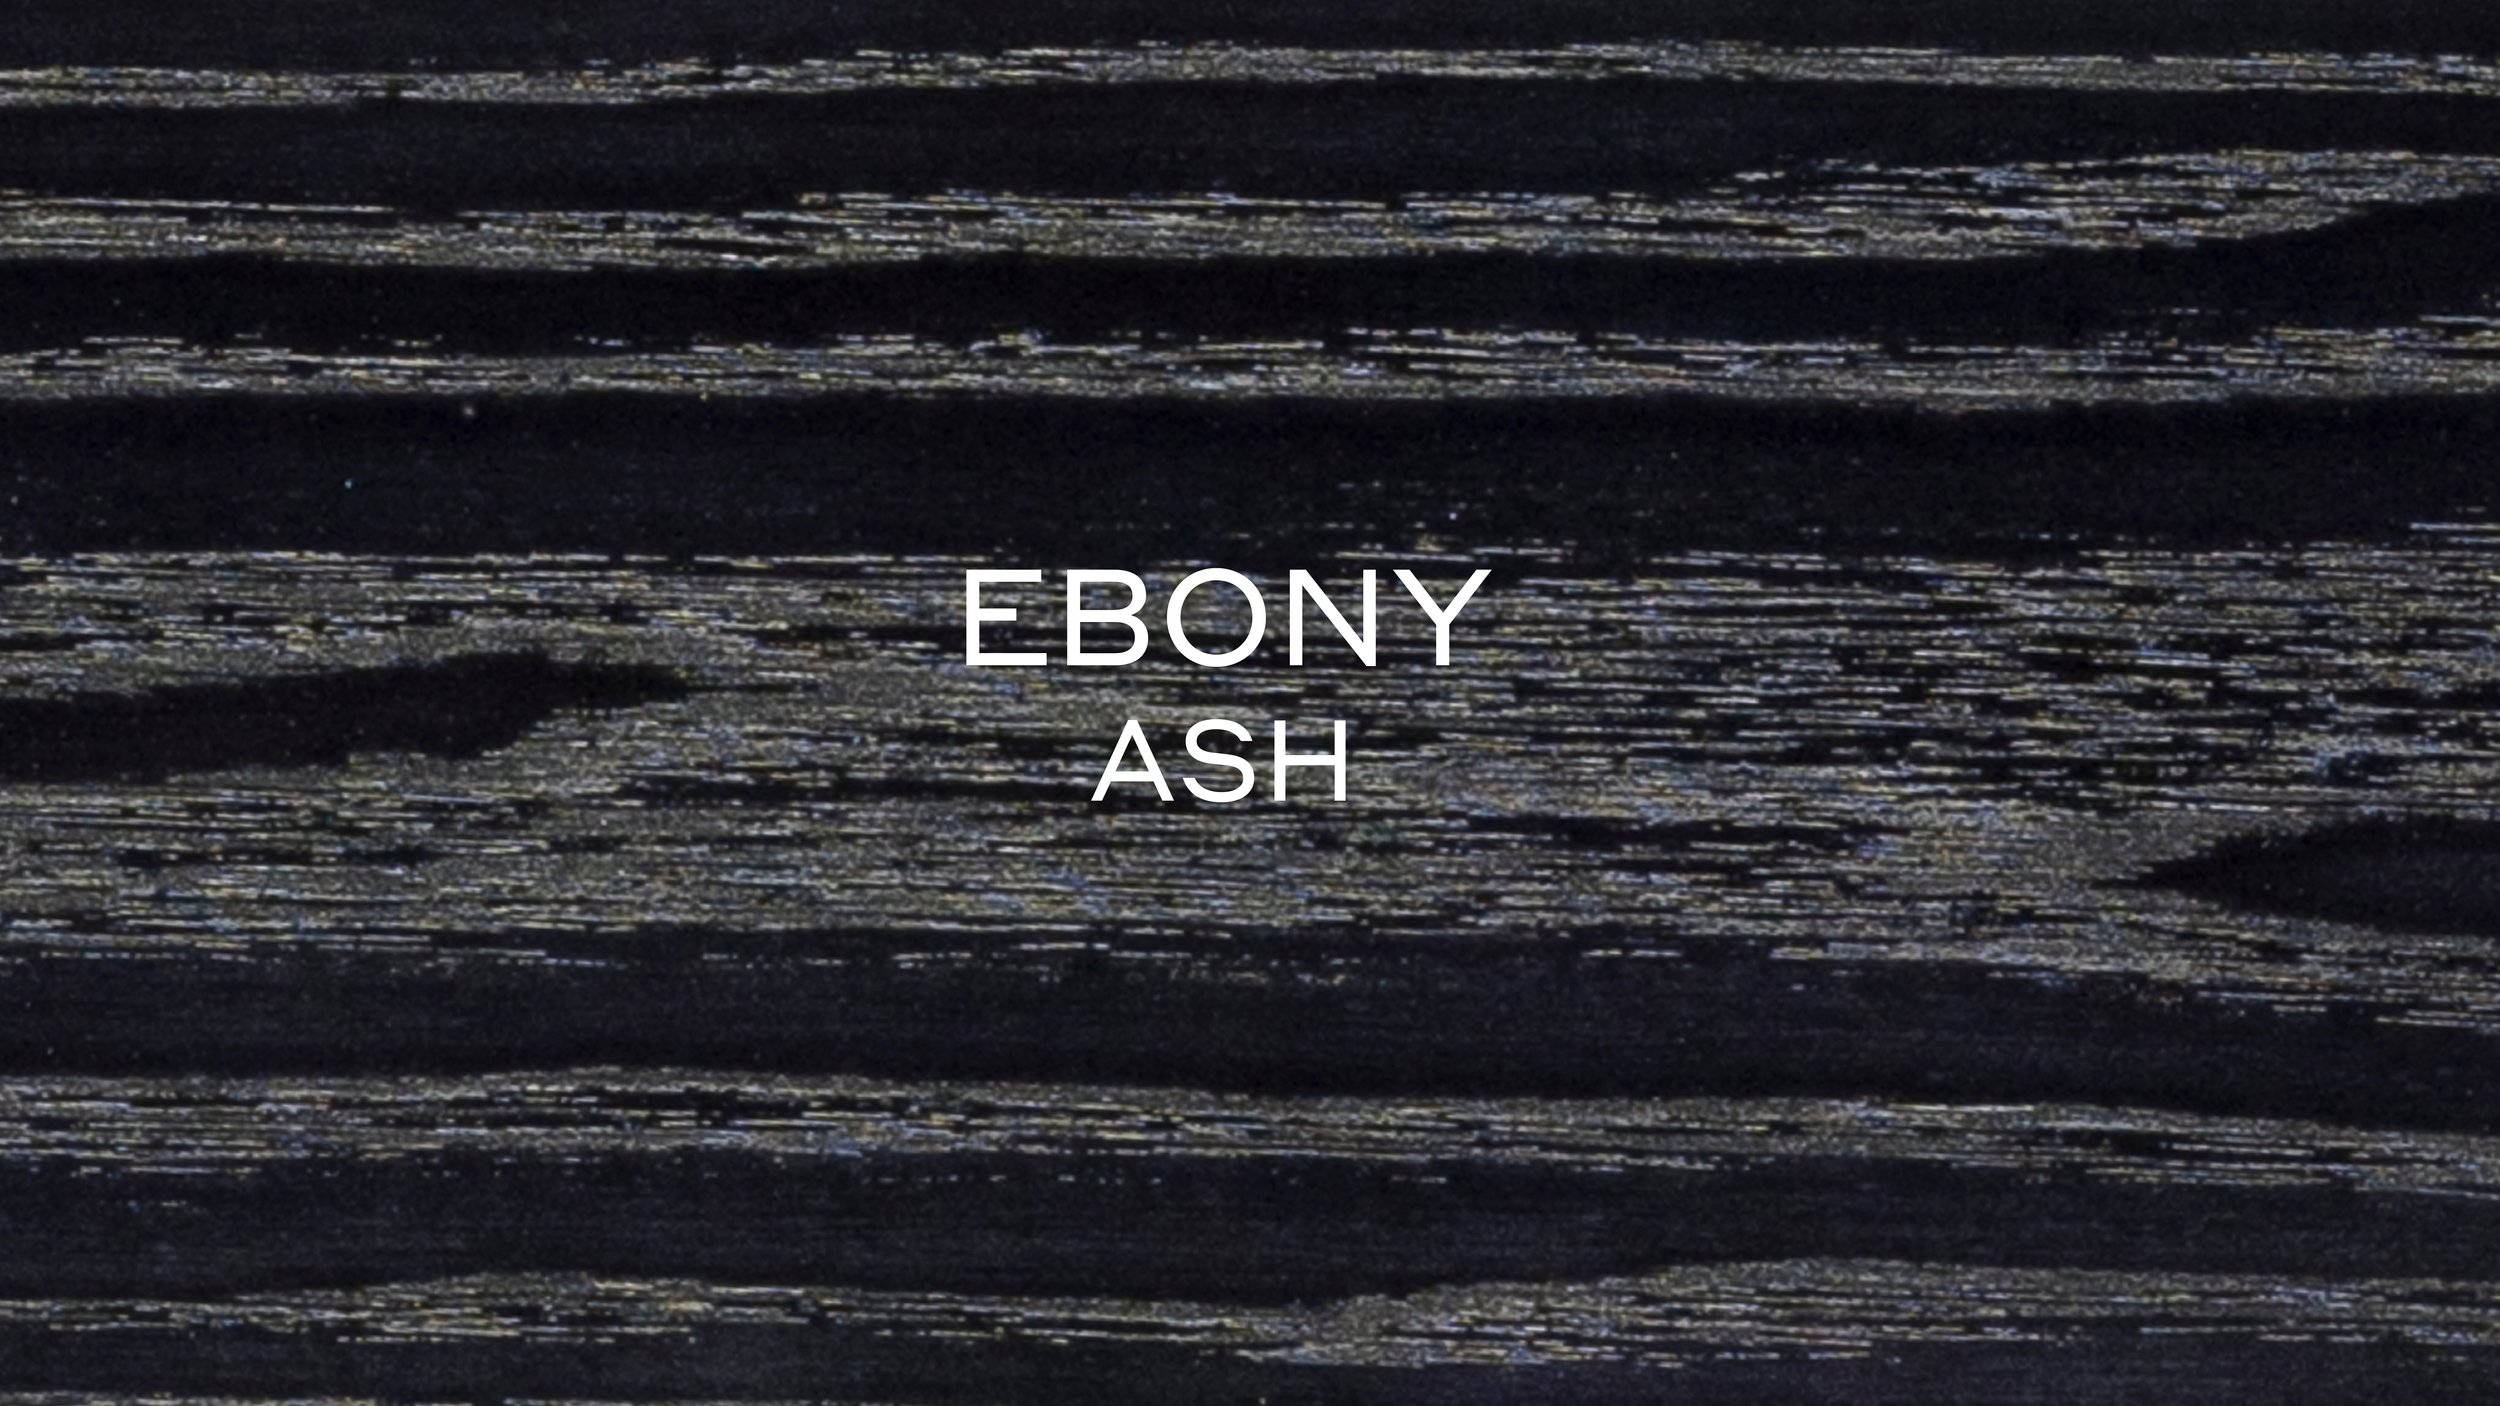 EBONY ASH.jpg